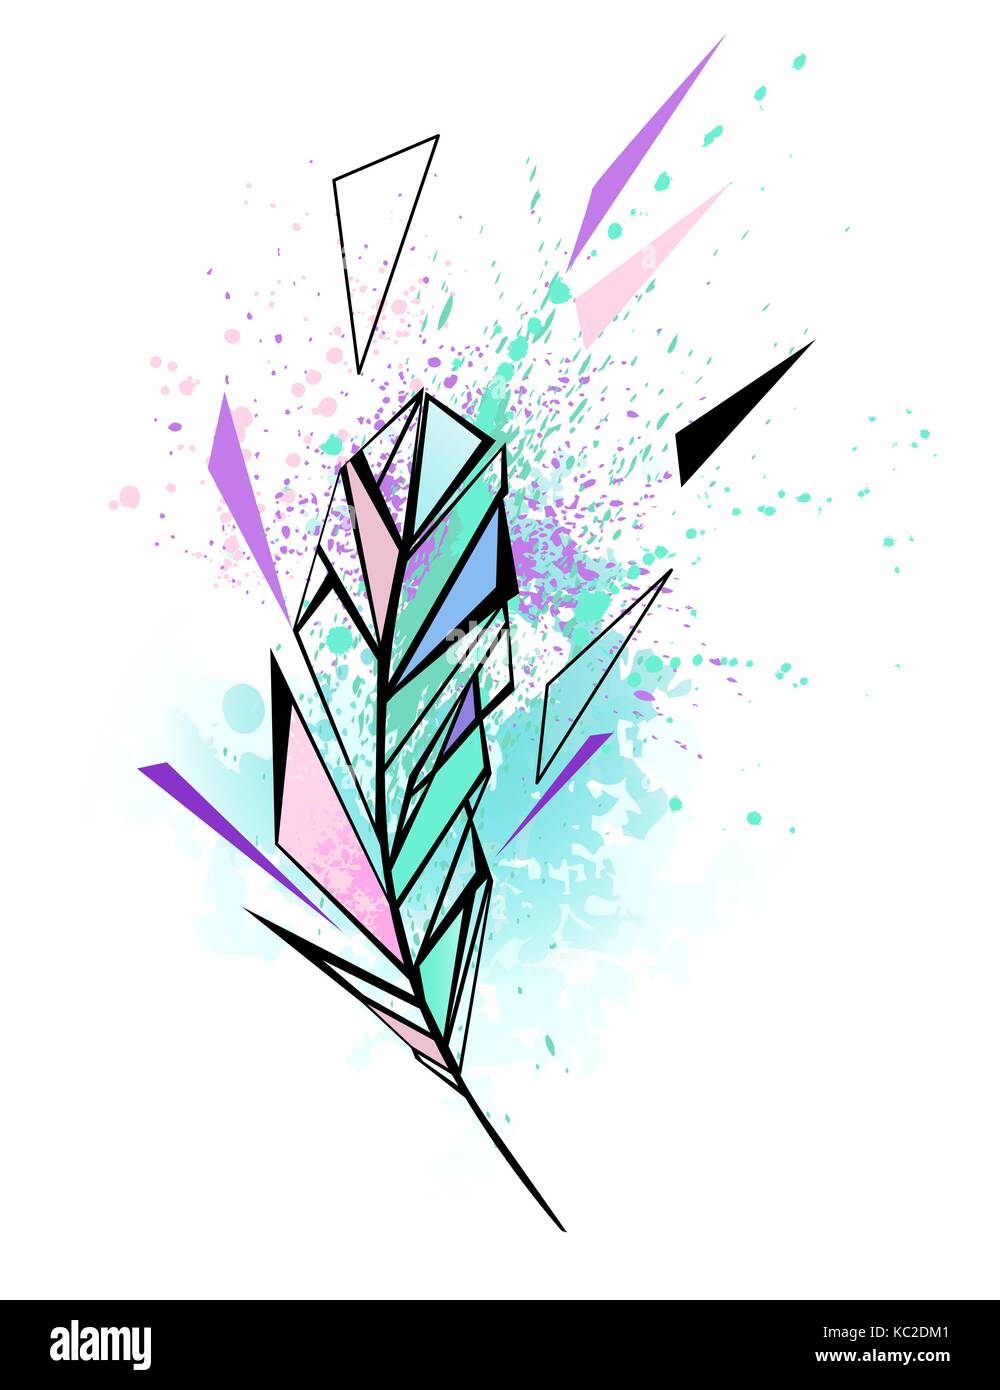 Polygonale Feder mit Flecken von Wasser Farbe Türkis und Rosa auf weißem Hintergrund. Aquarell Zeichnung. Malen. Tattoos Stil. Stock Vektor